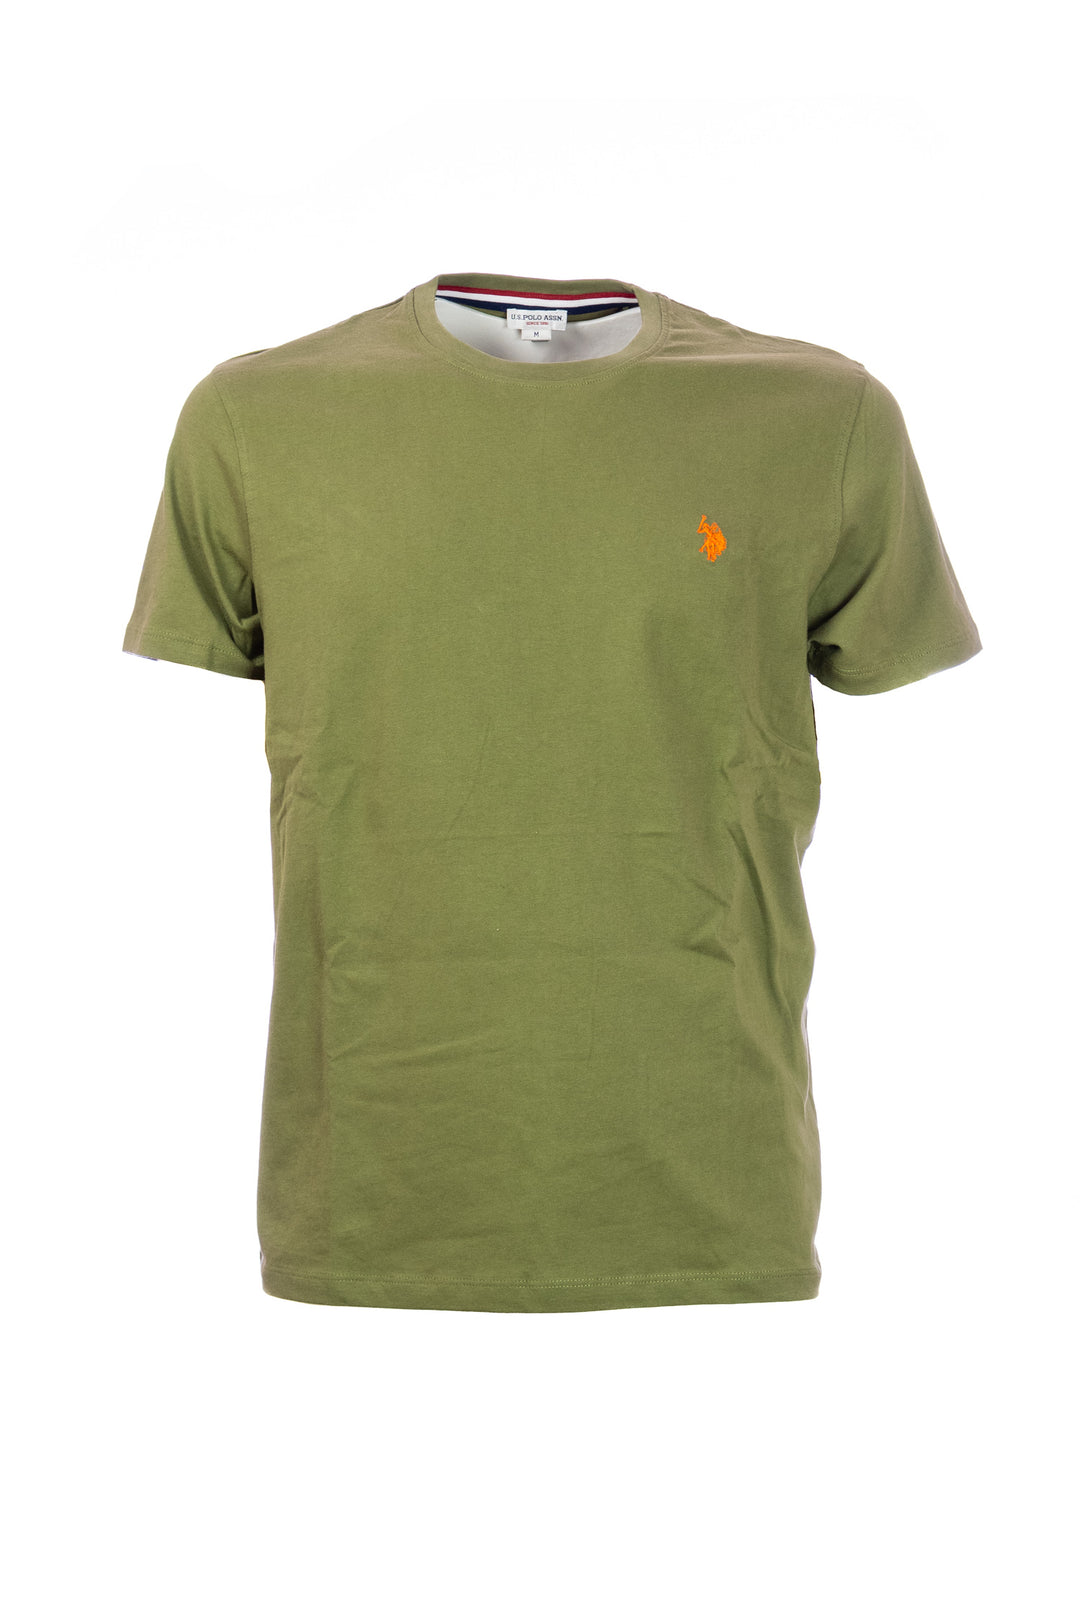 U.S. POLO ASSN. T-shirt verde oliva in cotone con logo ricamato sul petto - Mancinelli 1954